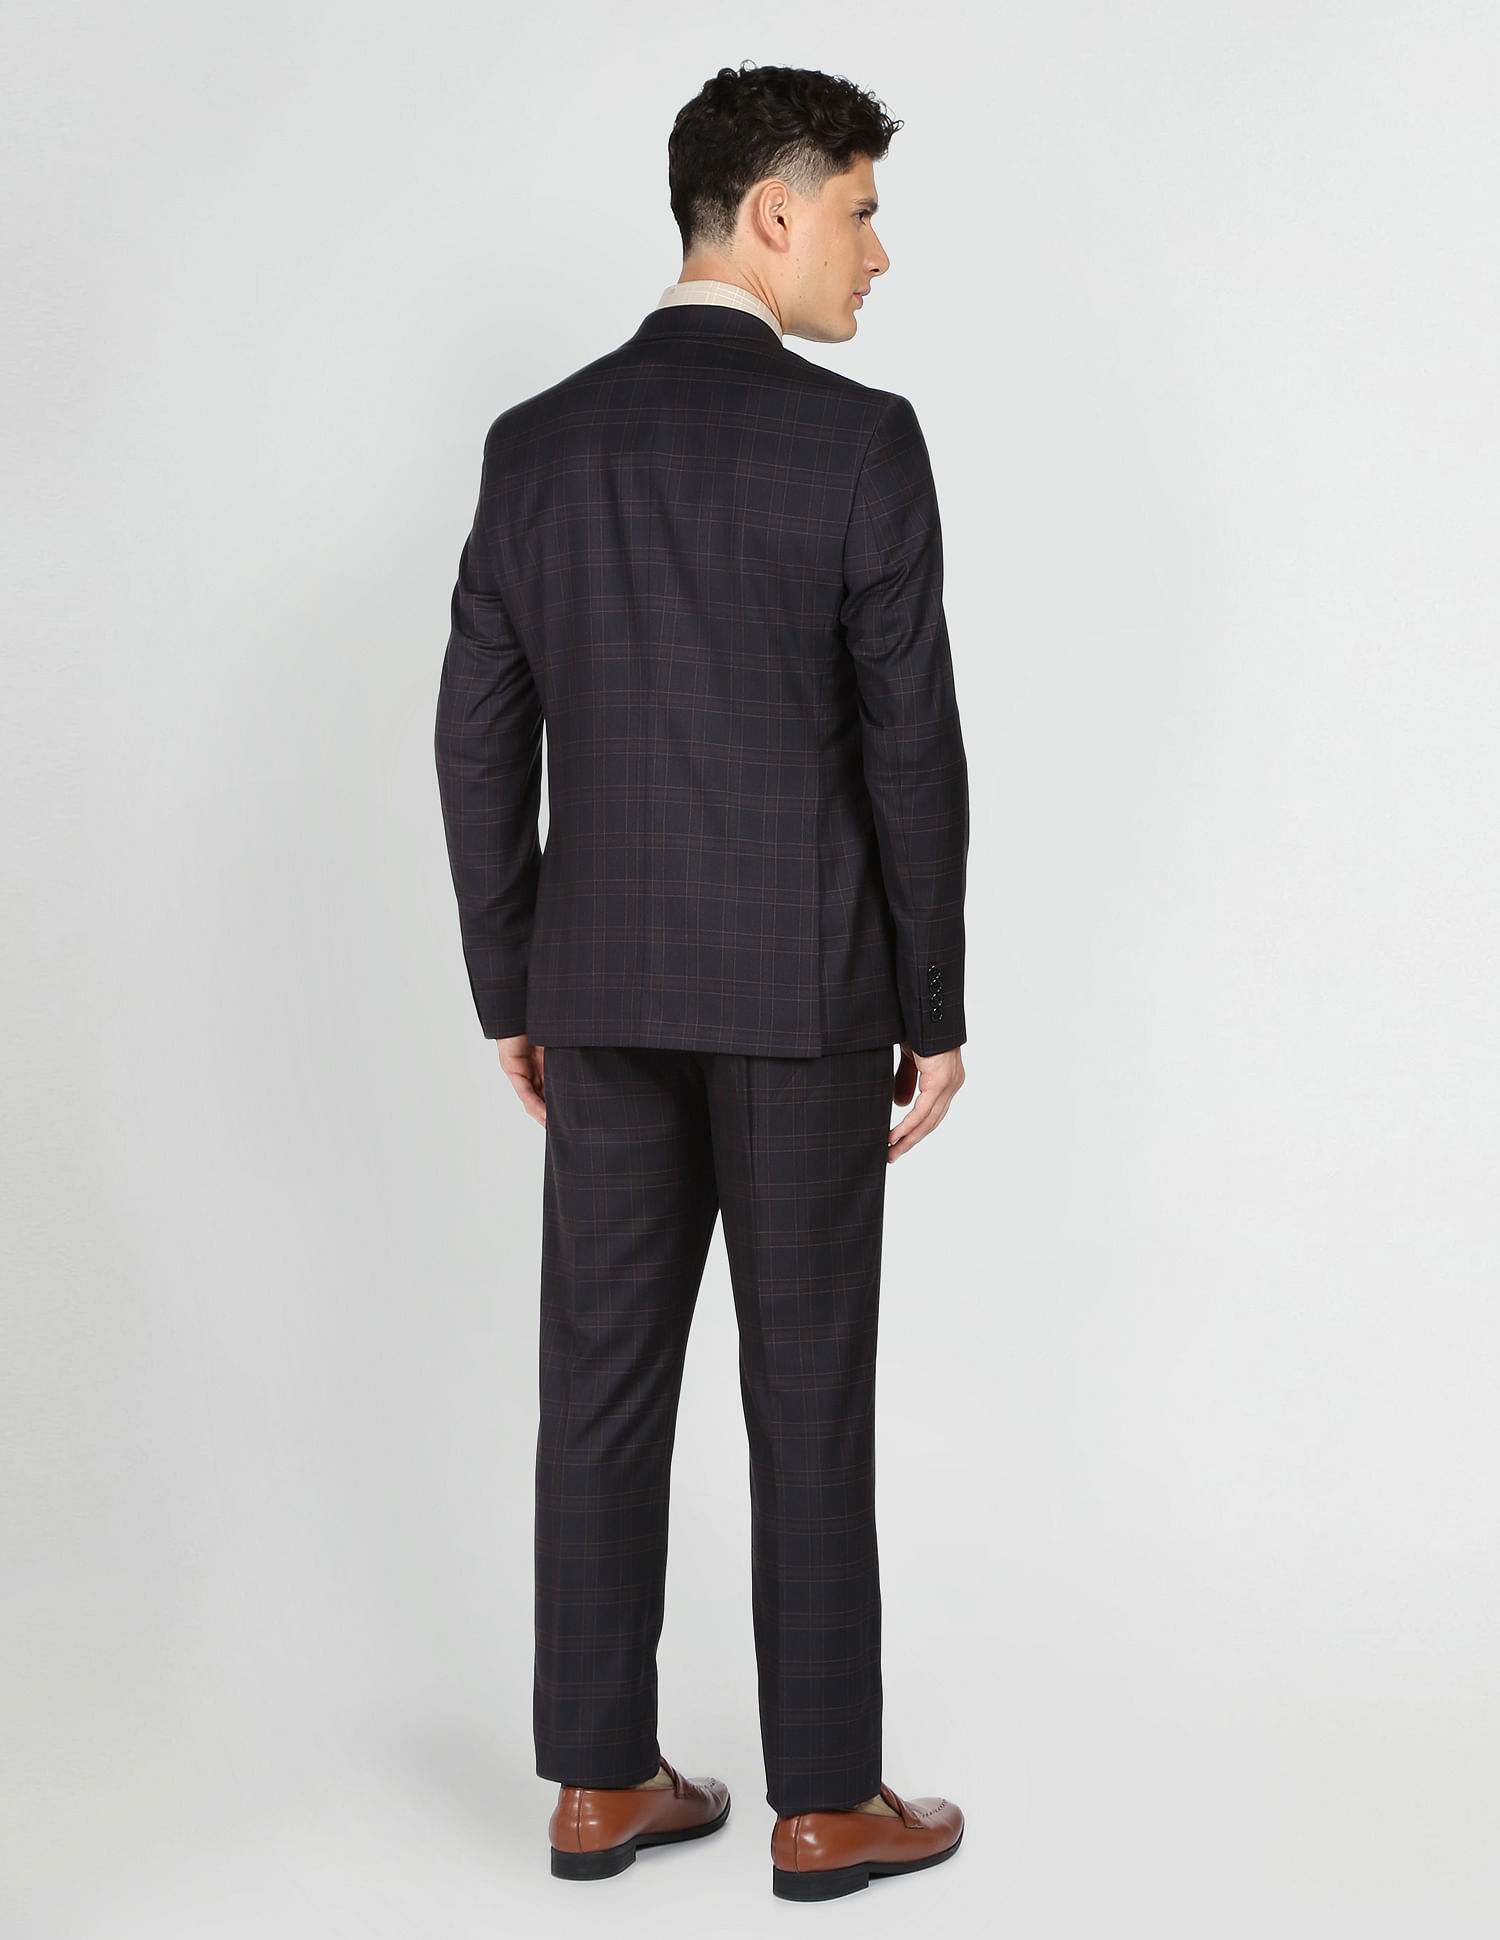 Limehaus | Black & Grey Checked Slim Fit Mens Suit | Suit Direct